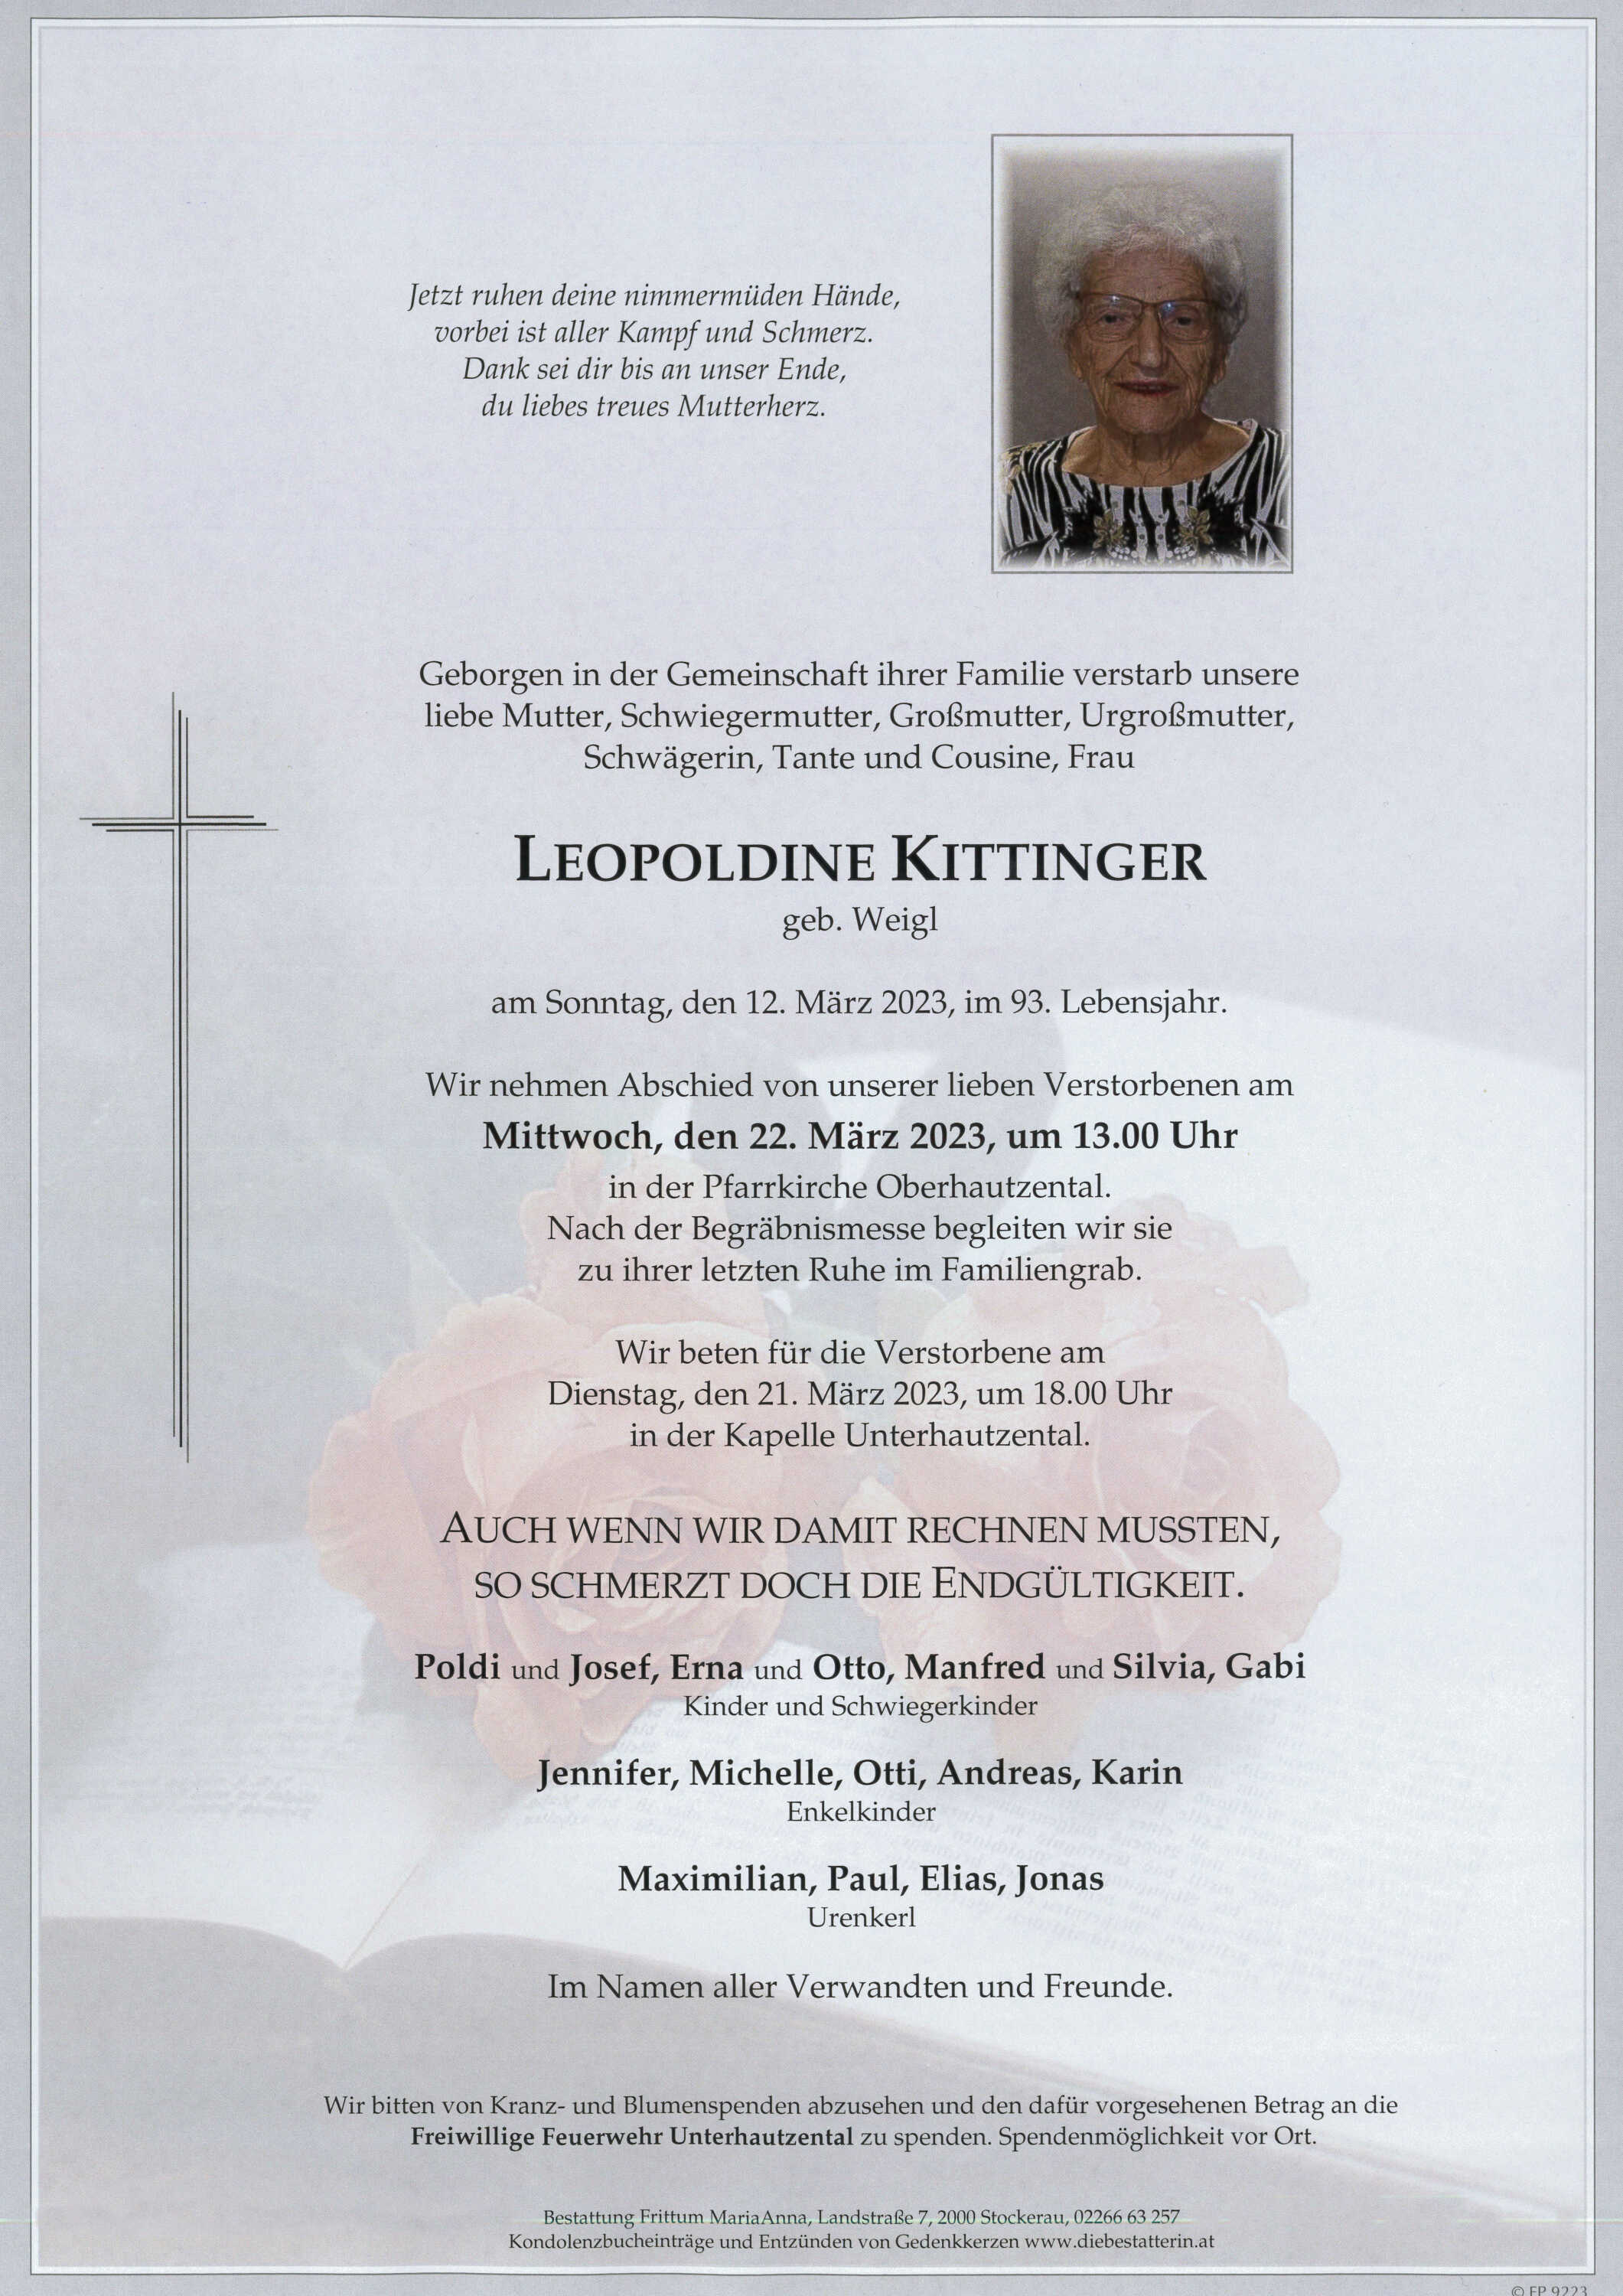 Leopoldine Kittinger